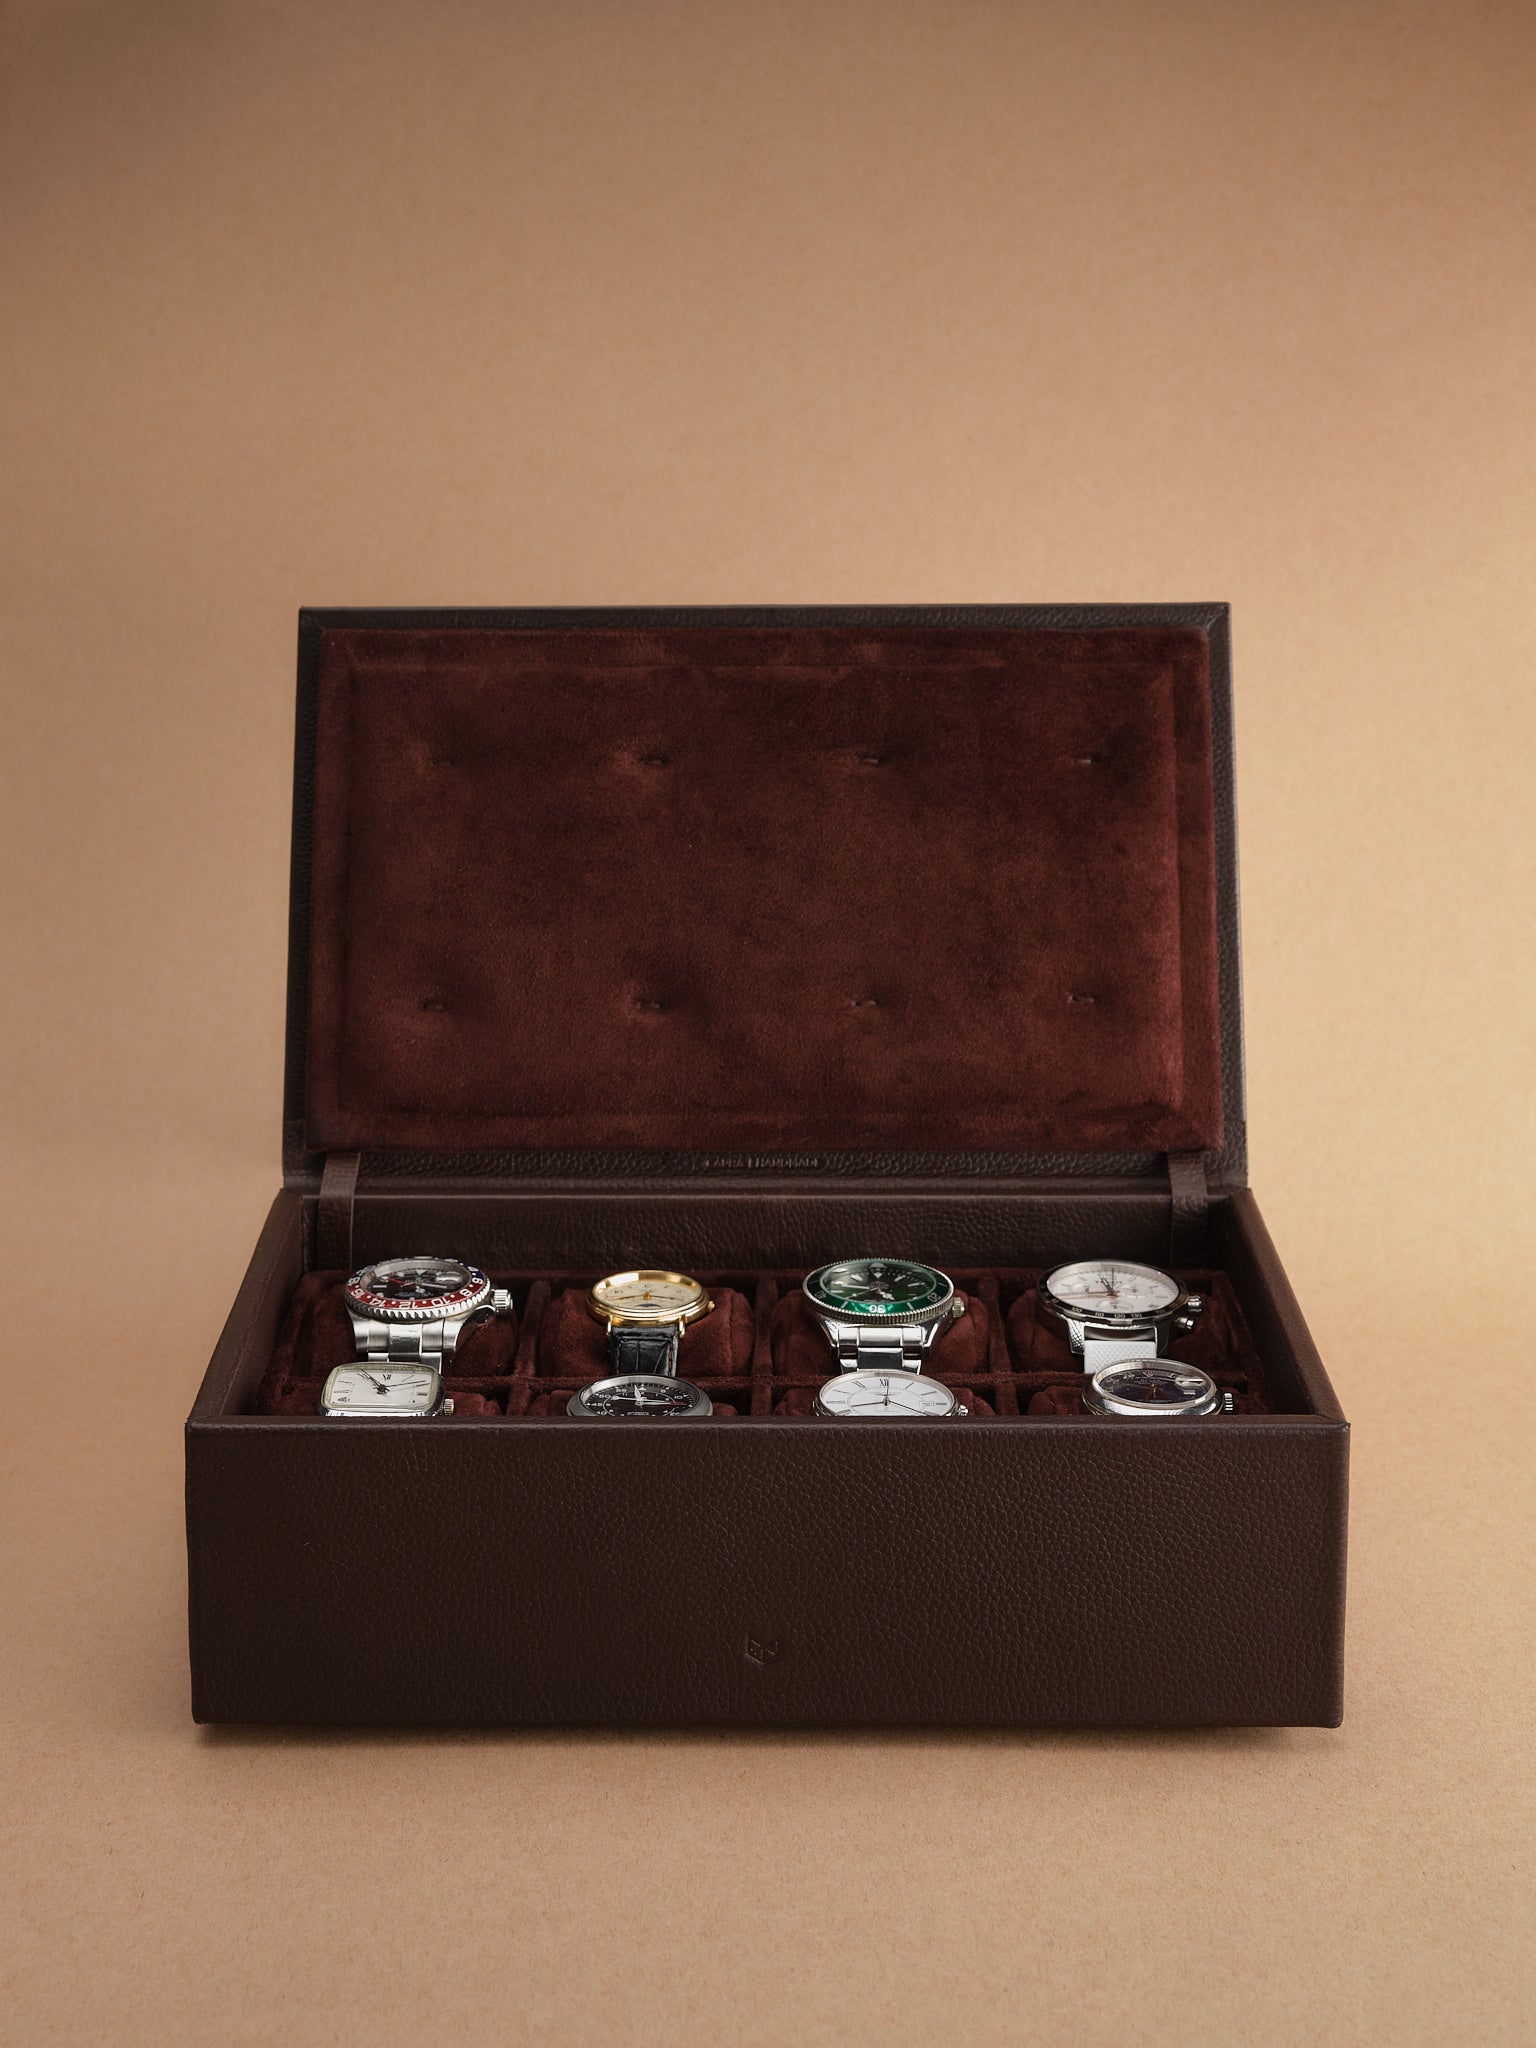 Suede  Lining. Watch Storage. Rolex Watch Box Dark Brown by Capra Leather